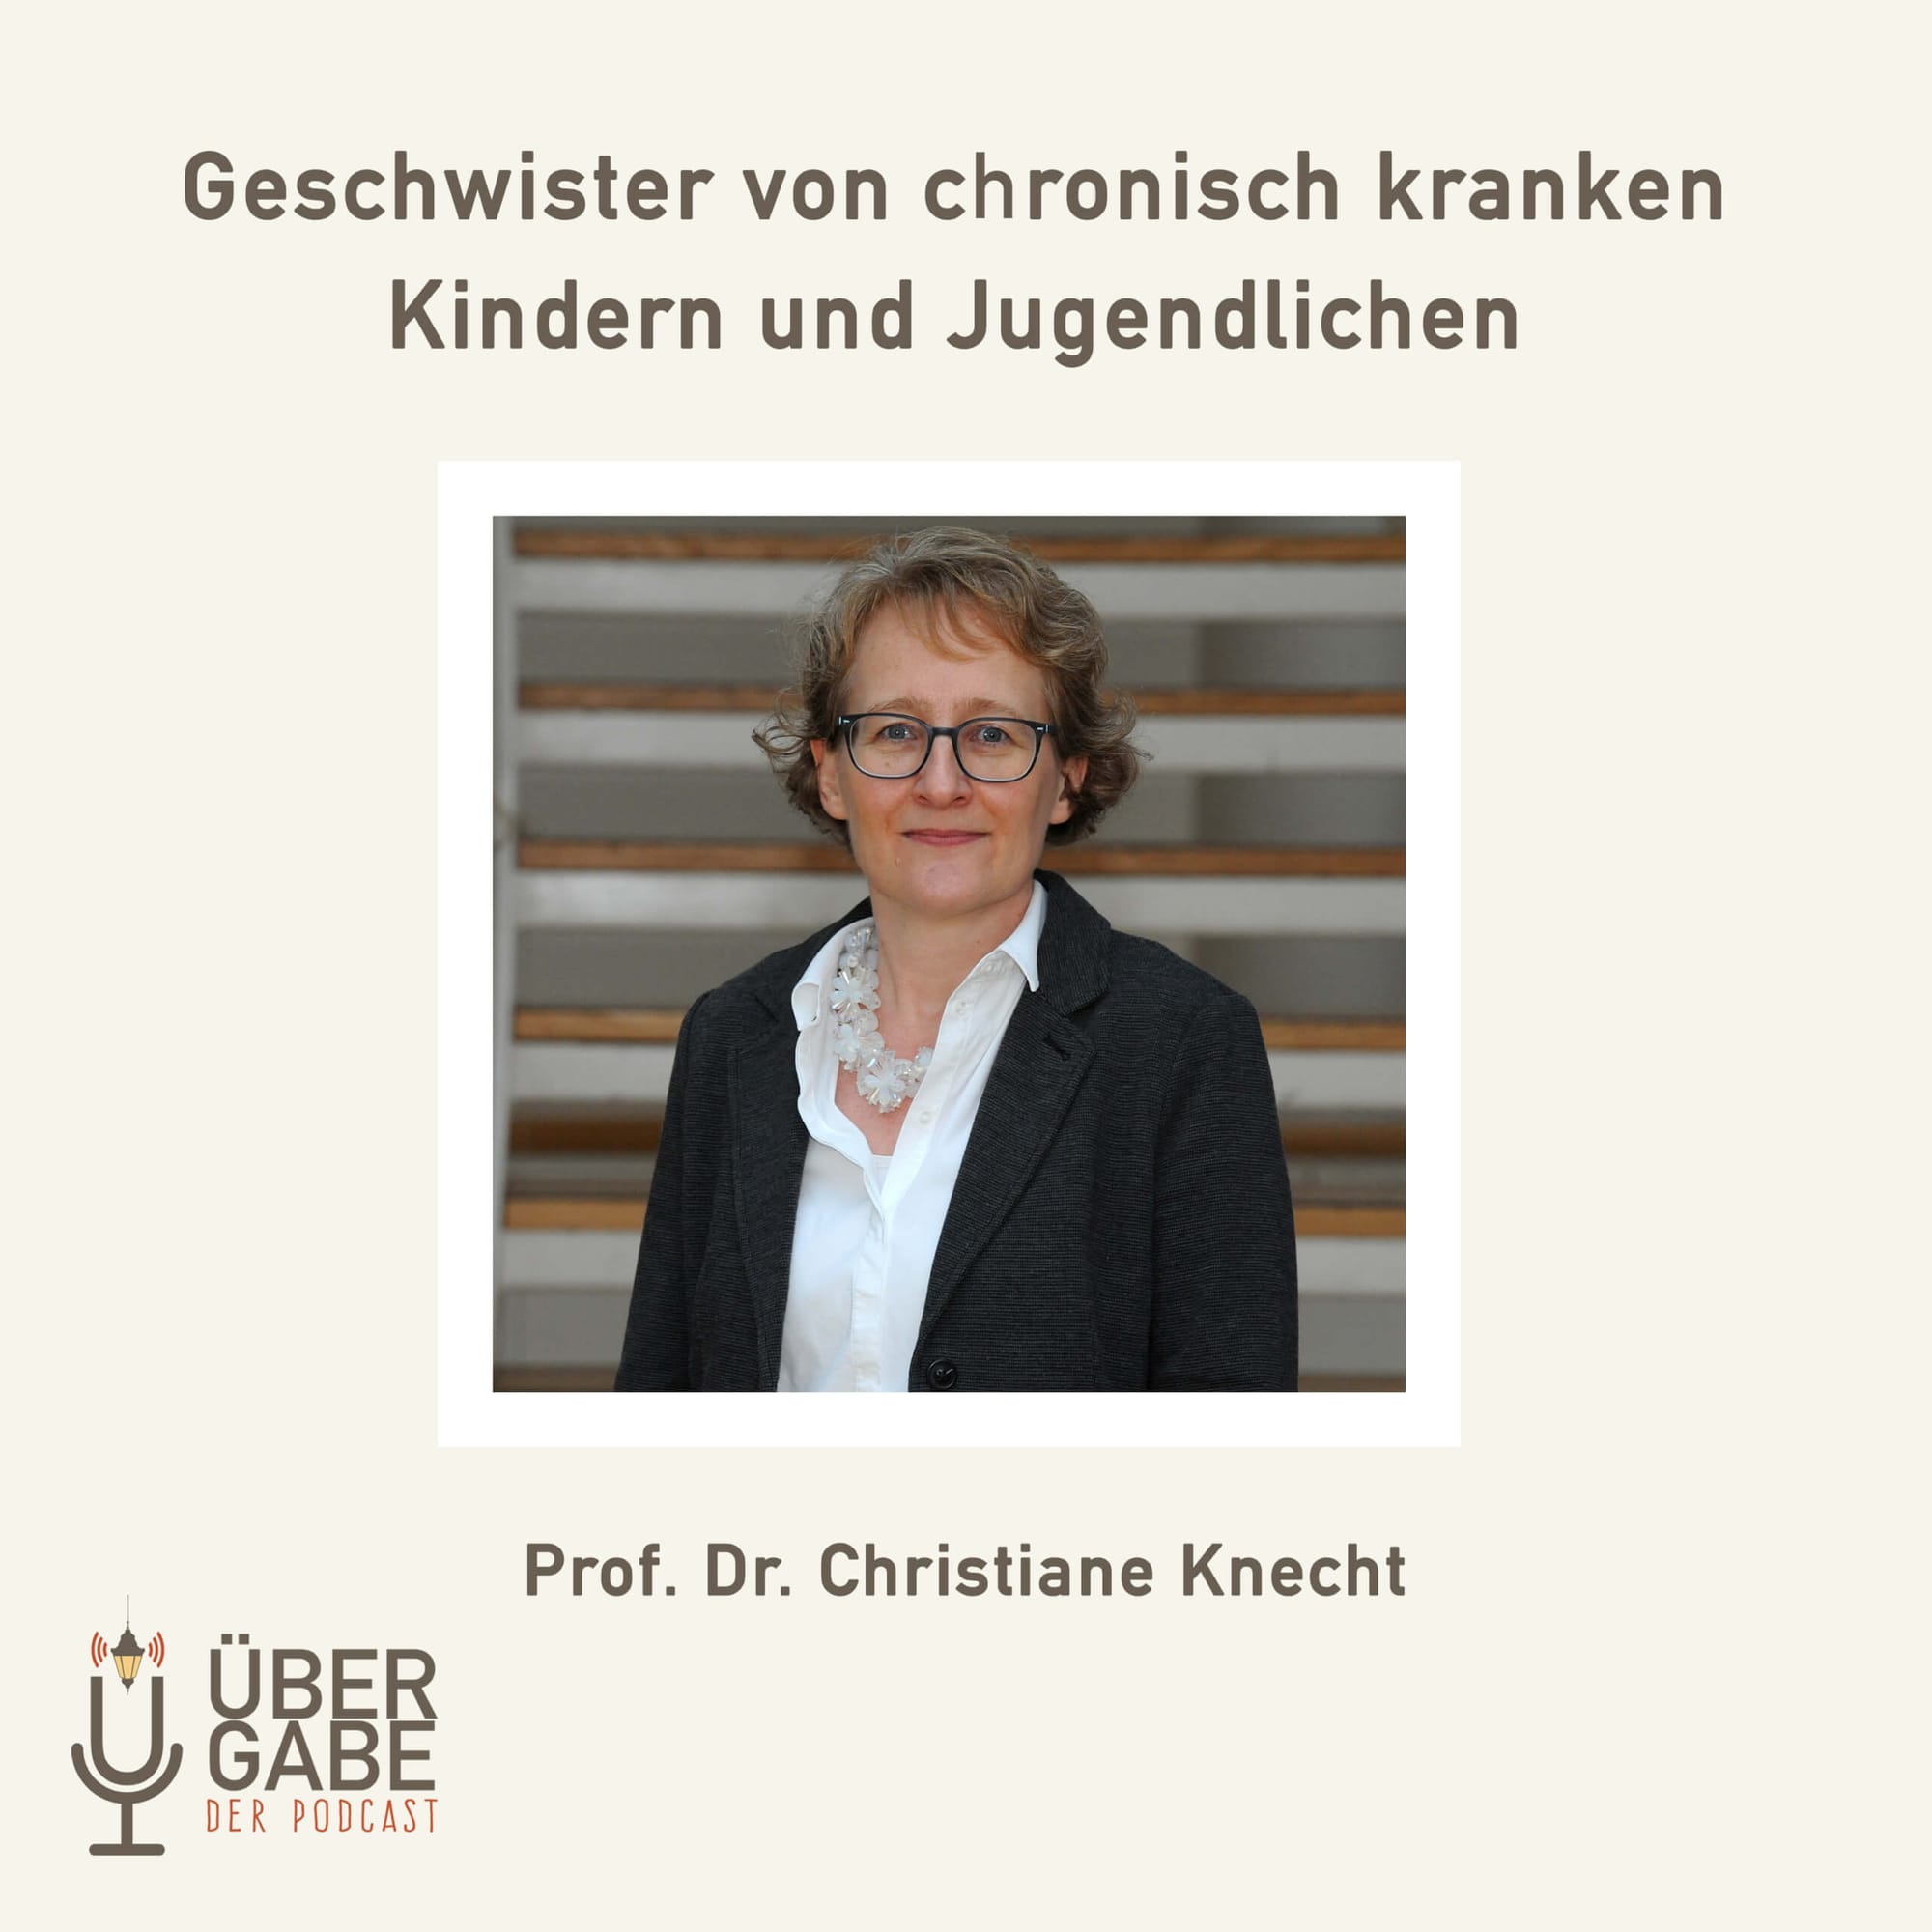 Geschwister von chronisch kranken Kindern und Jugendlichen (Prof. Dr. Christiane Knecht)